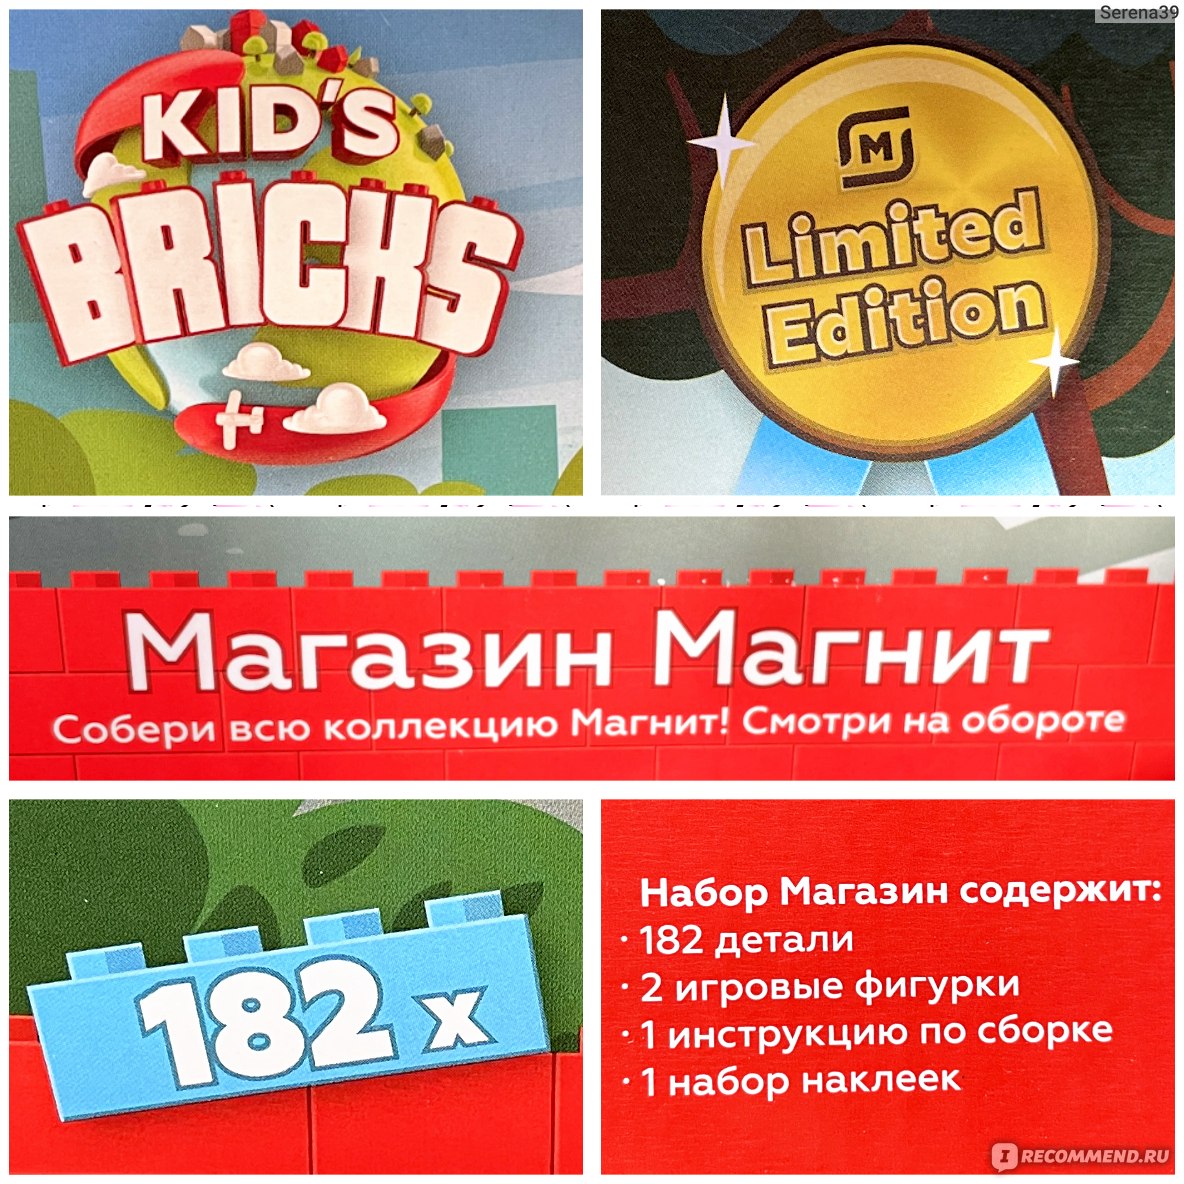 Сайт Акция Магнит Kid's Bricks "Магнитополис" https://magnit.ru/magnitopolis/ фото